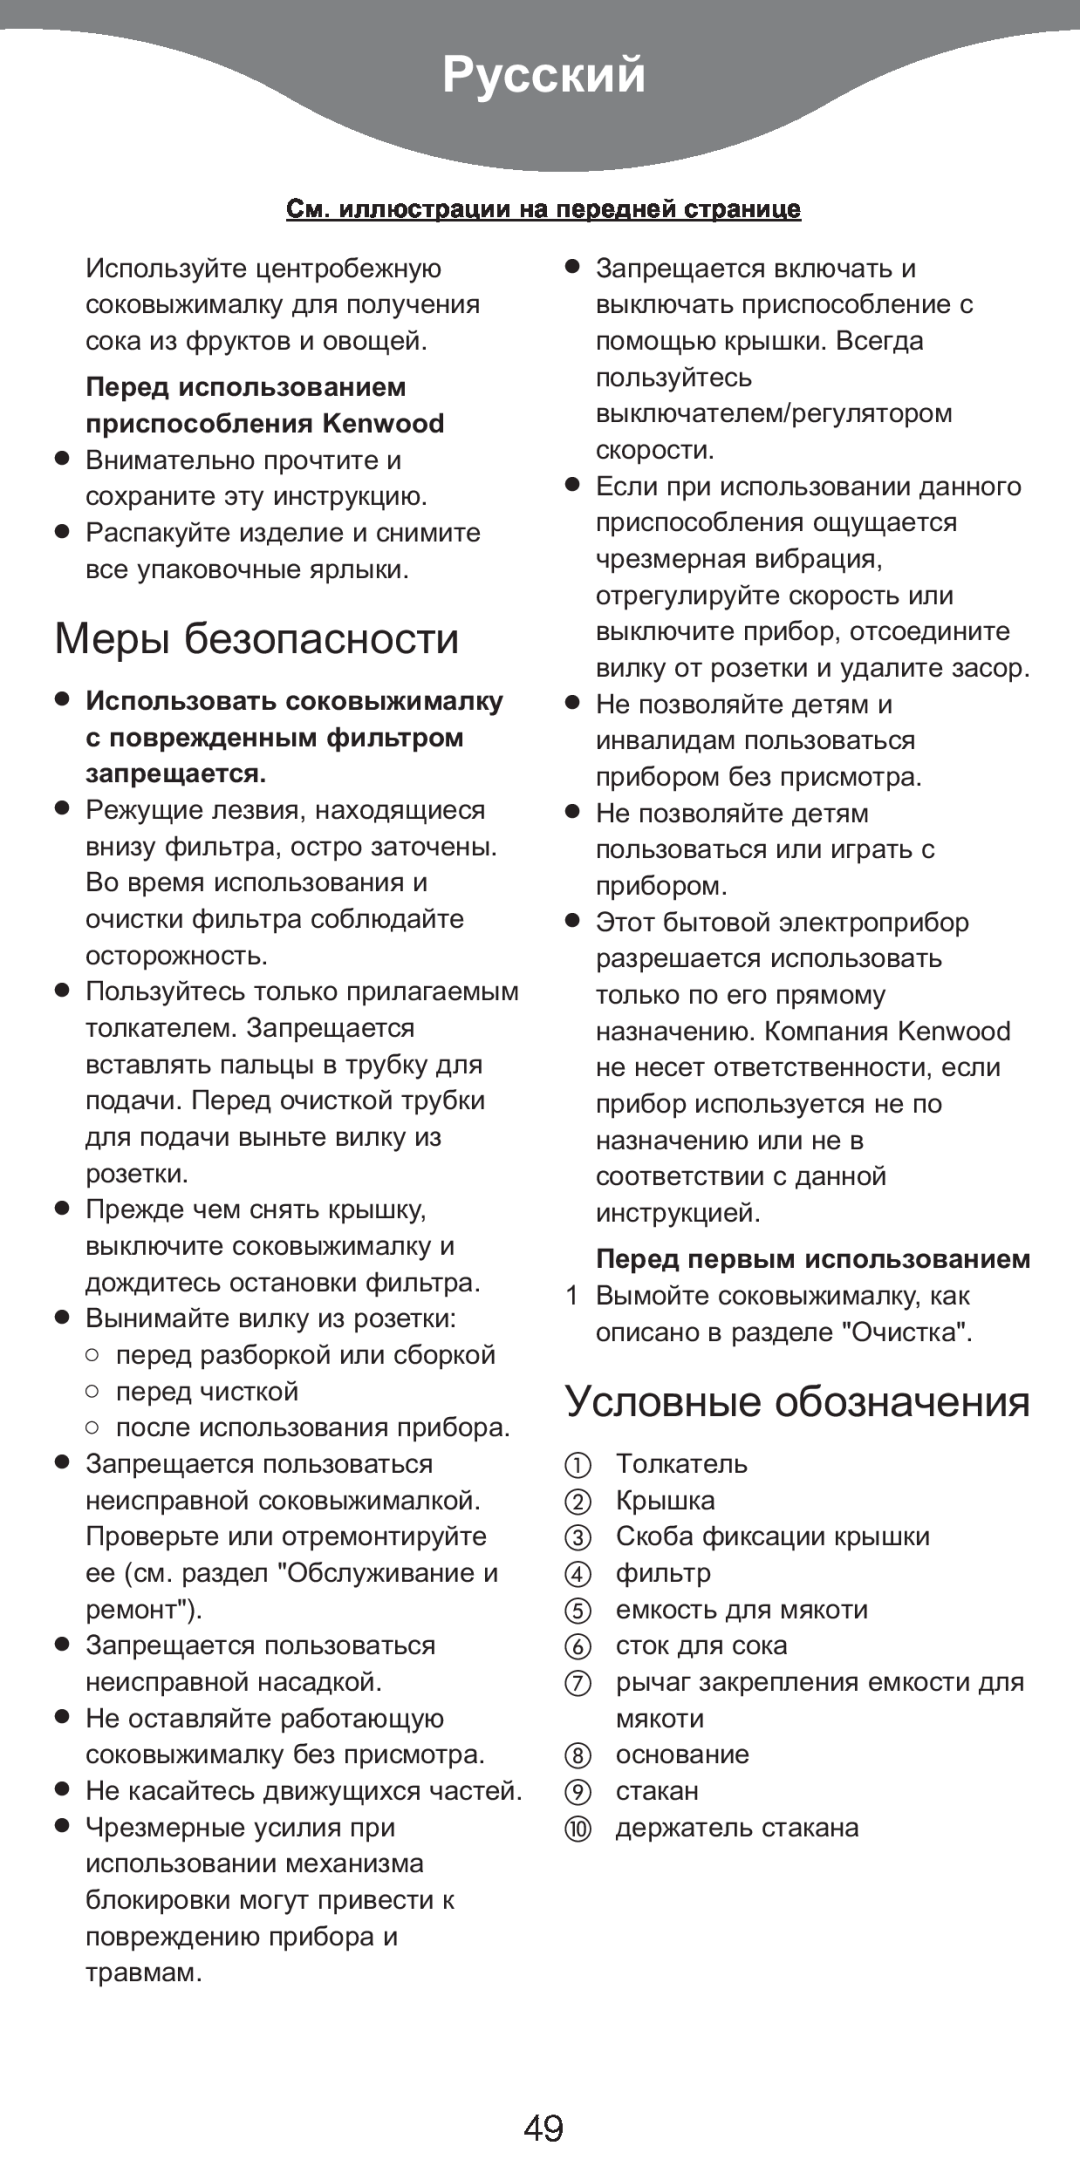 Kenwood AT265 manual Русский, Меры безопасности, Условные обозначения, Перед использованием приспособления Kenwood 